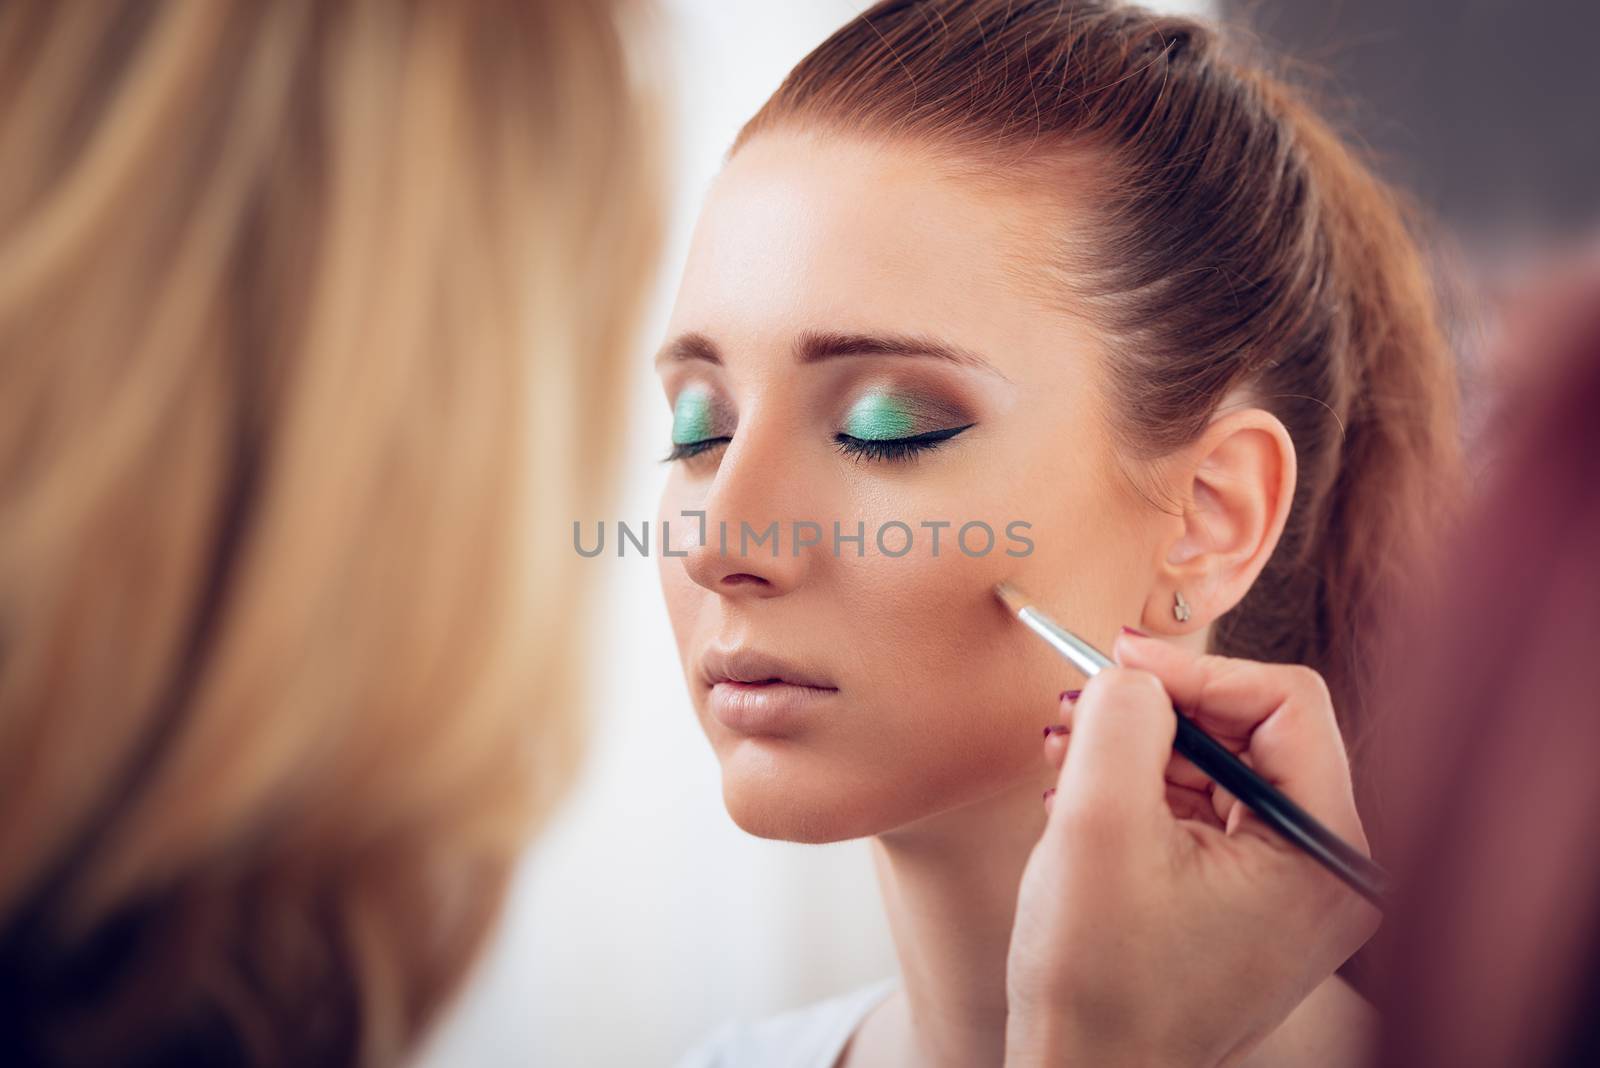 Makeup artist contouring face to model. Close up. 